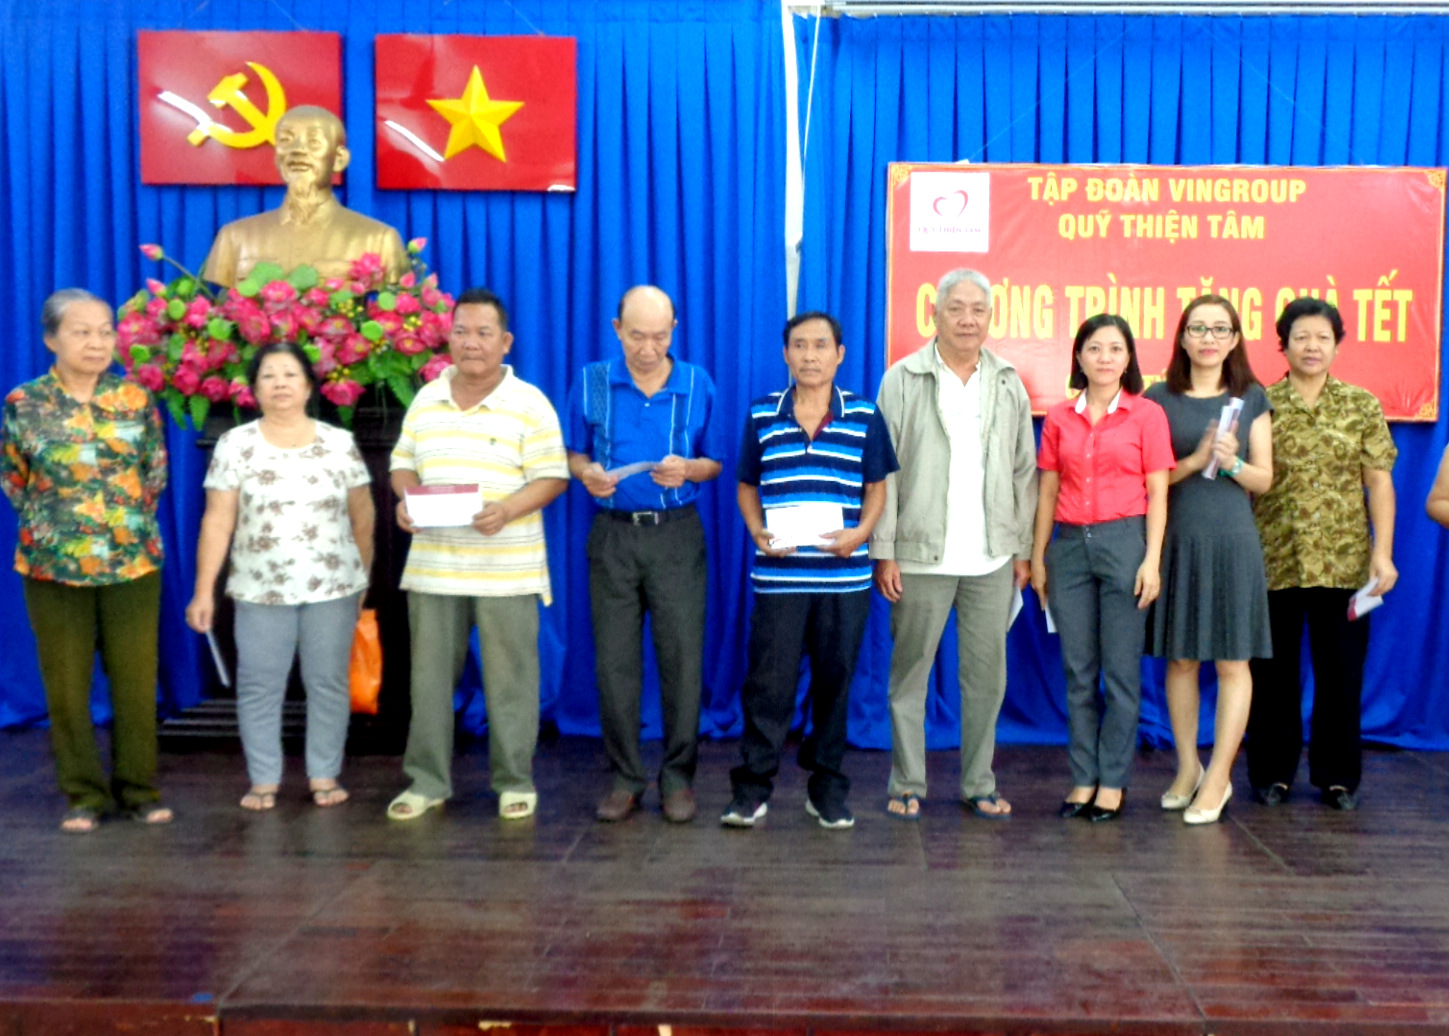 Image: Hoạt động chăm lo an sinh xã hội dịp xuân Canh Tý năm 2020 và Kỷ niệm 90 năm ngày thành lập Đảng Cộng Sản Việt Nam (03/02/1930 – 03/02/2019)